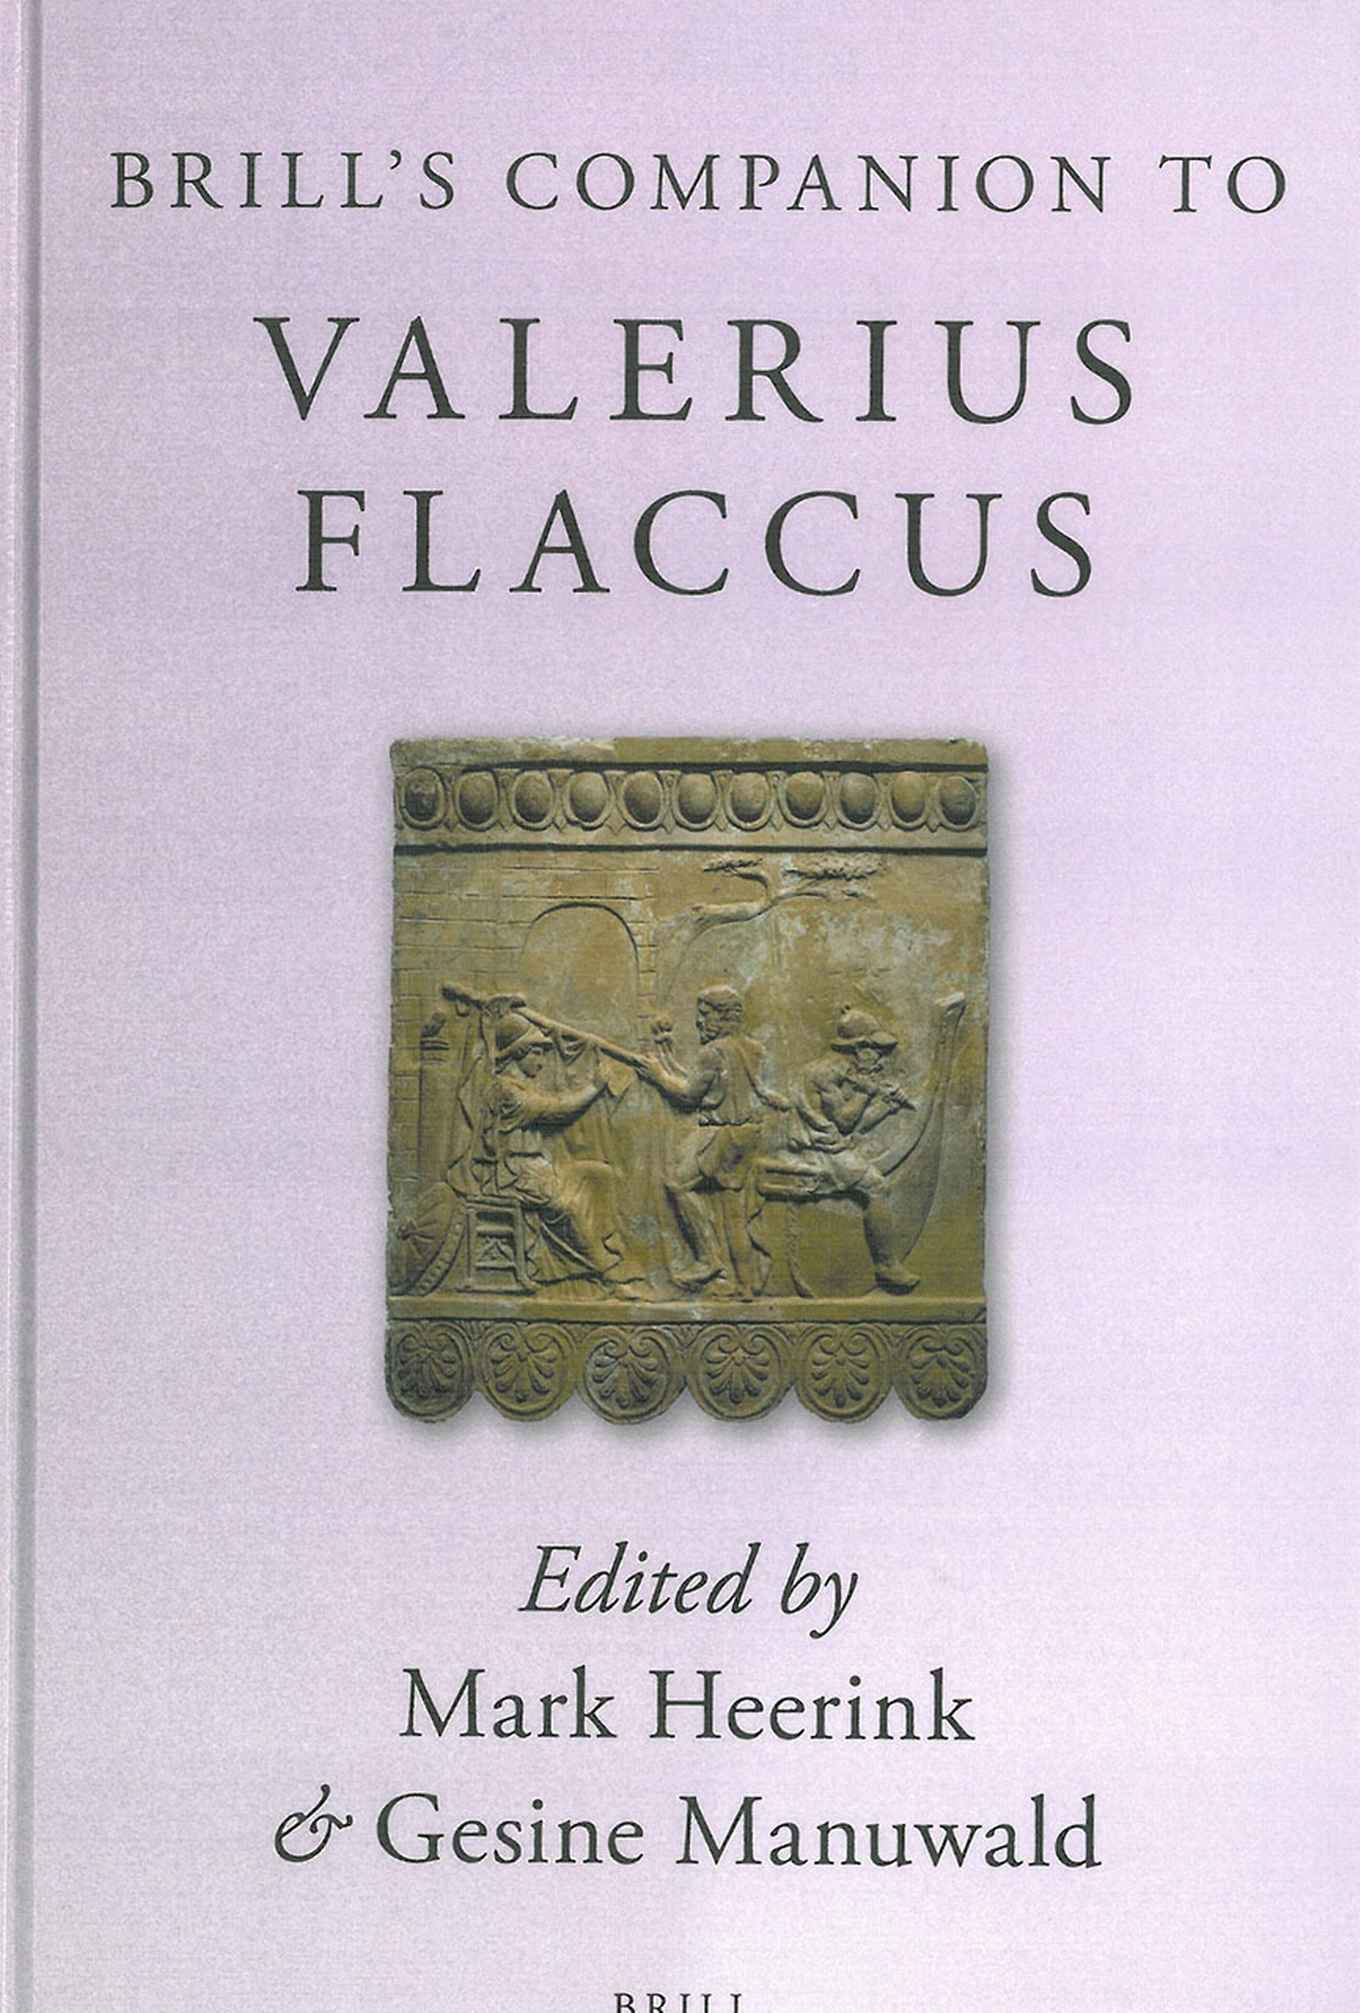 Brill’s companion to Valerius Flaccus